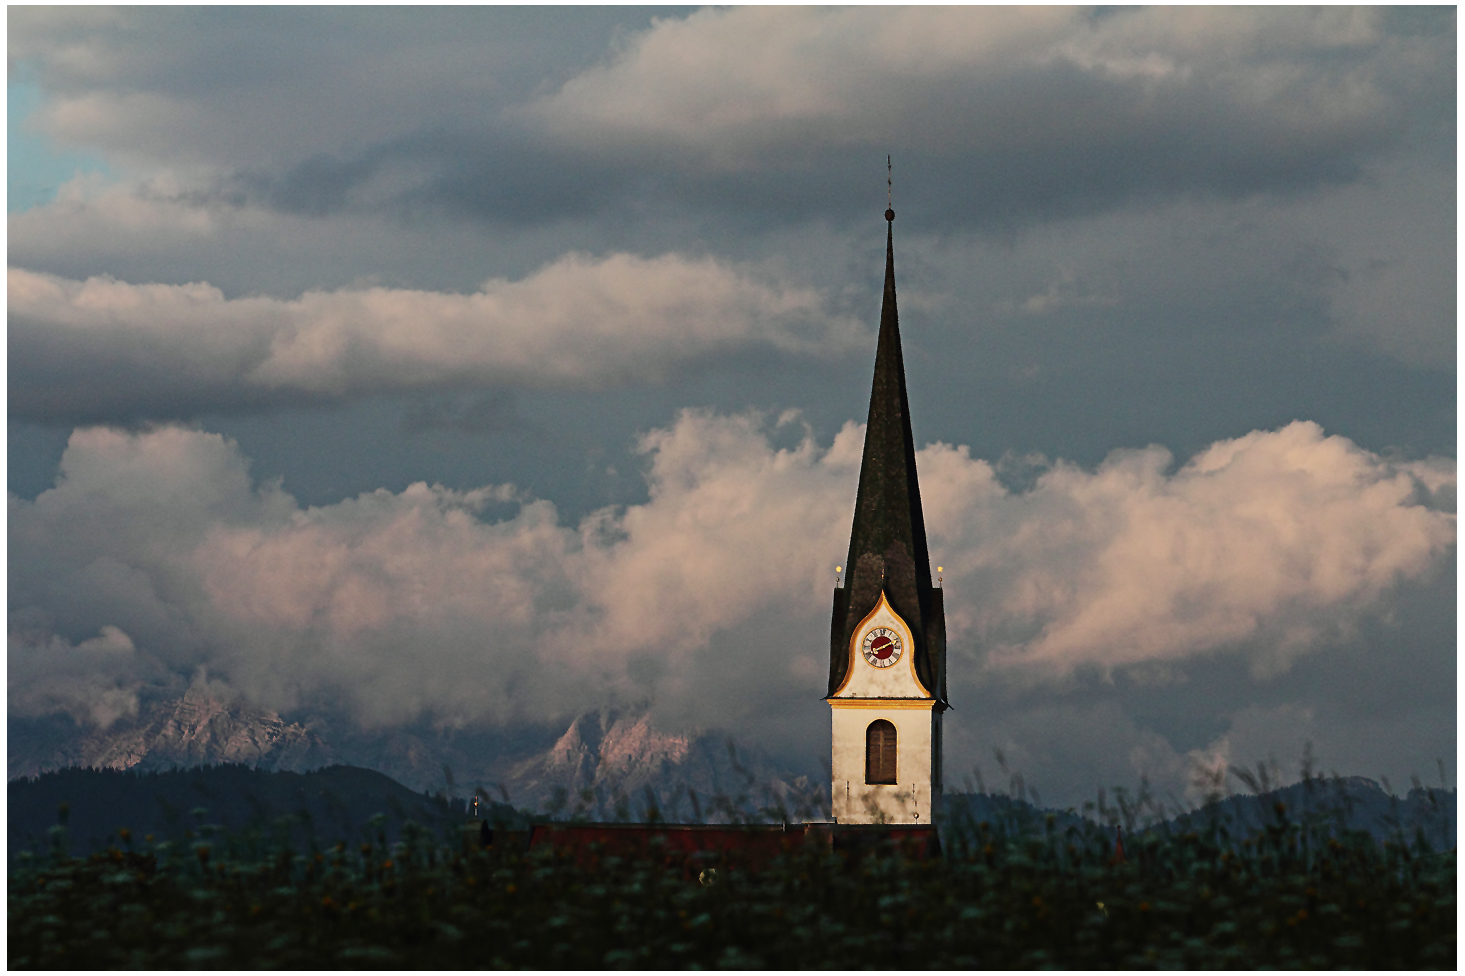 Pfarrkirche "Zum Hl. Michael" in Ellmau am wilden Kaiser